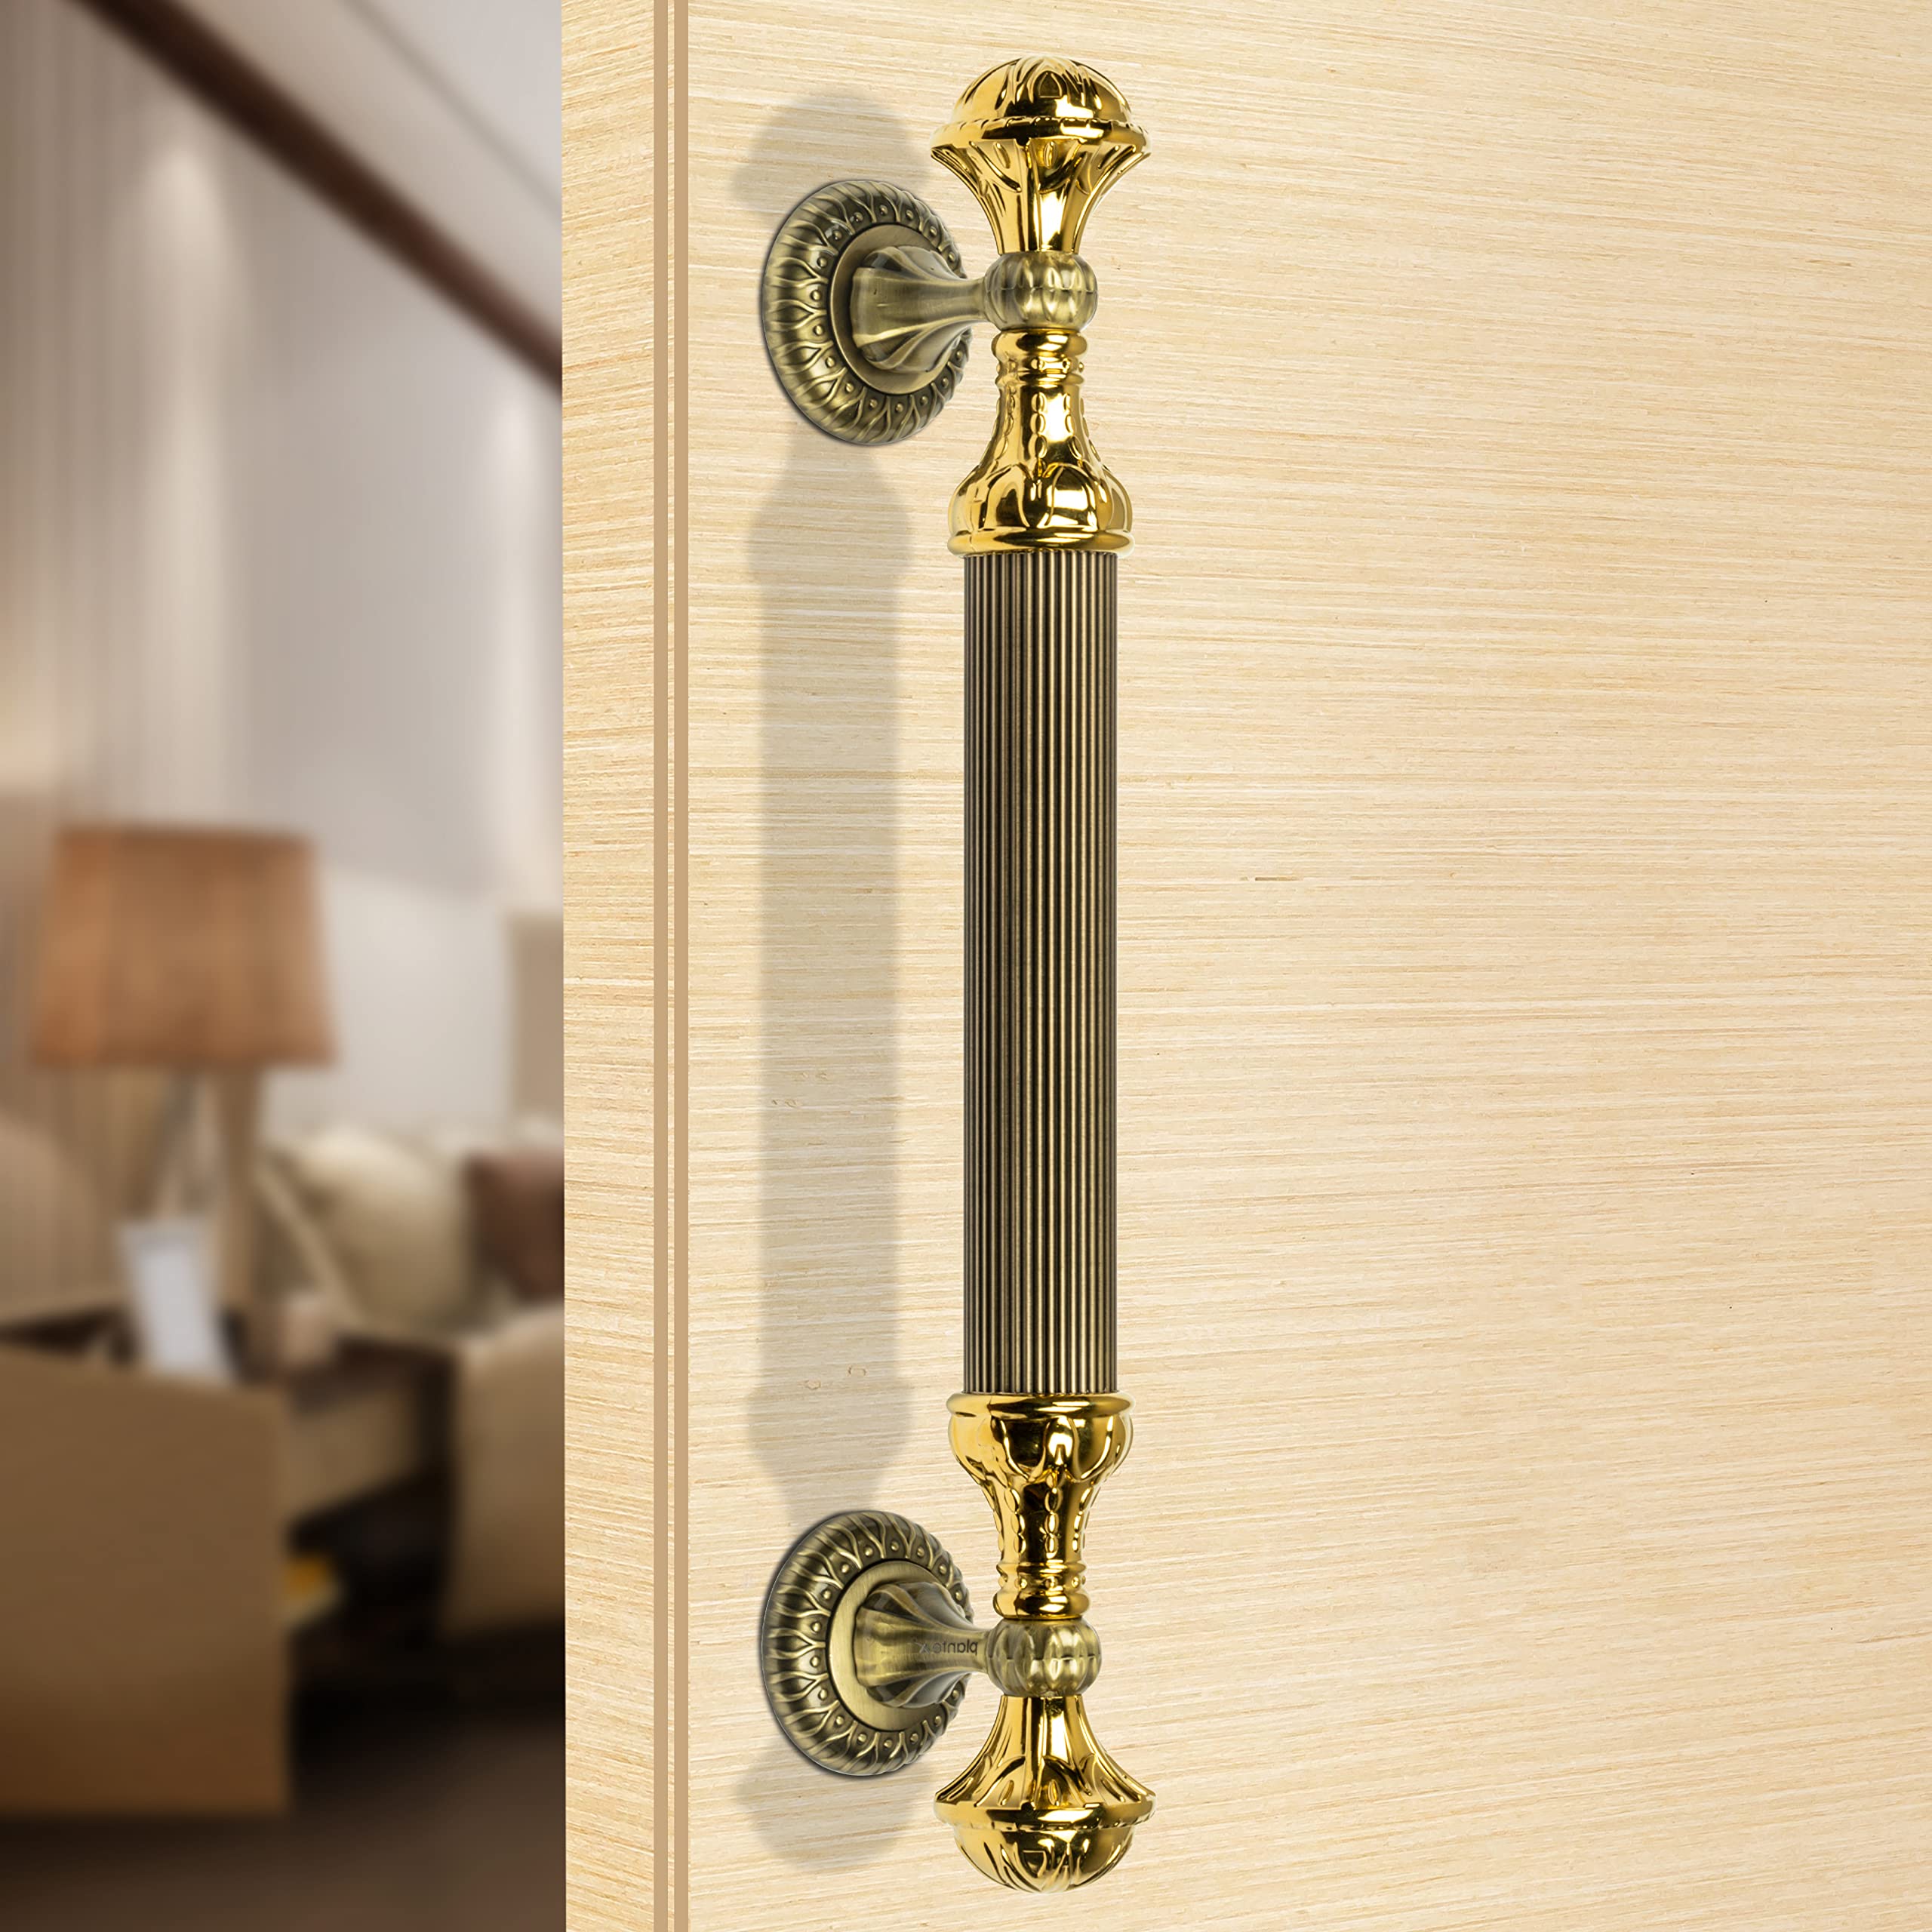 Plantex Heavy Duty Door Handle/Door & Home Decor/15-inches Main Door Handle/Door Pull Push Handle - Pack of 1 ( 320-Brass Antique and Gold Finish)